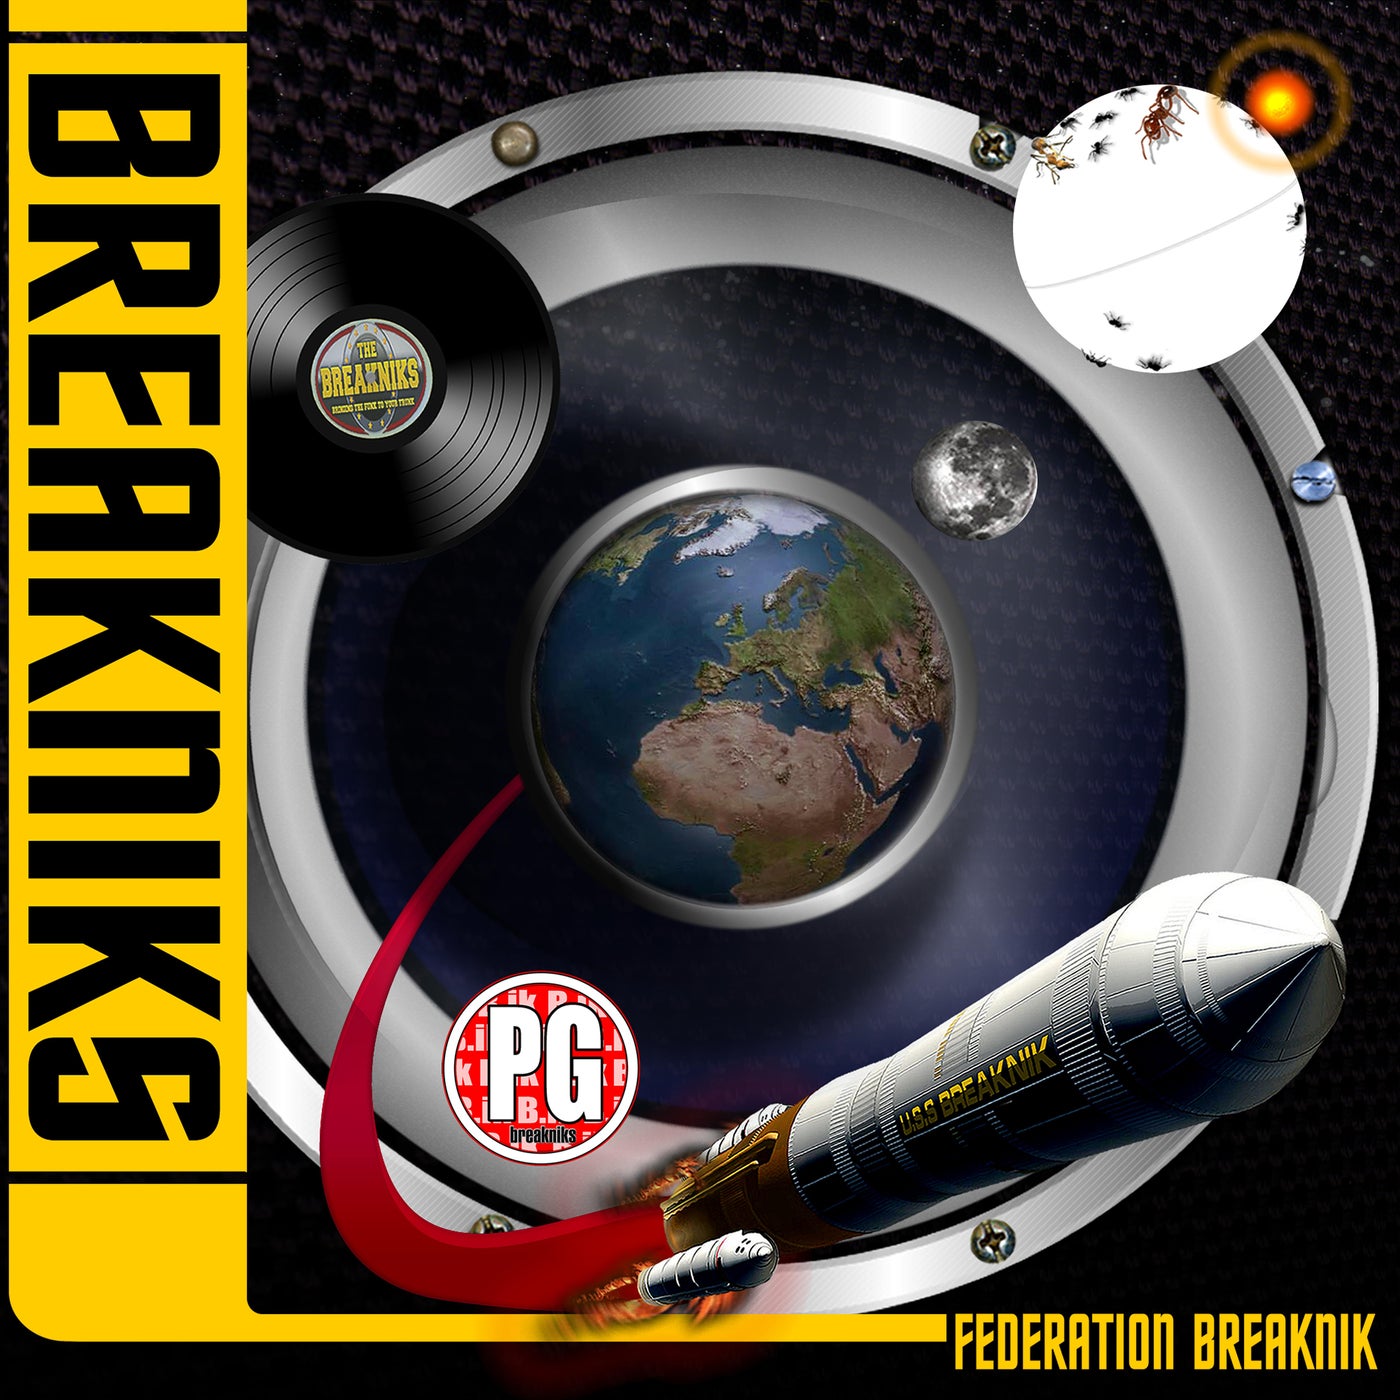 Federation Breaknik